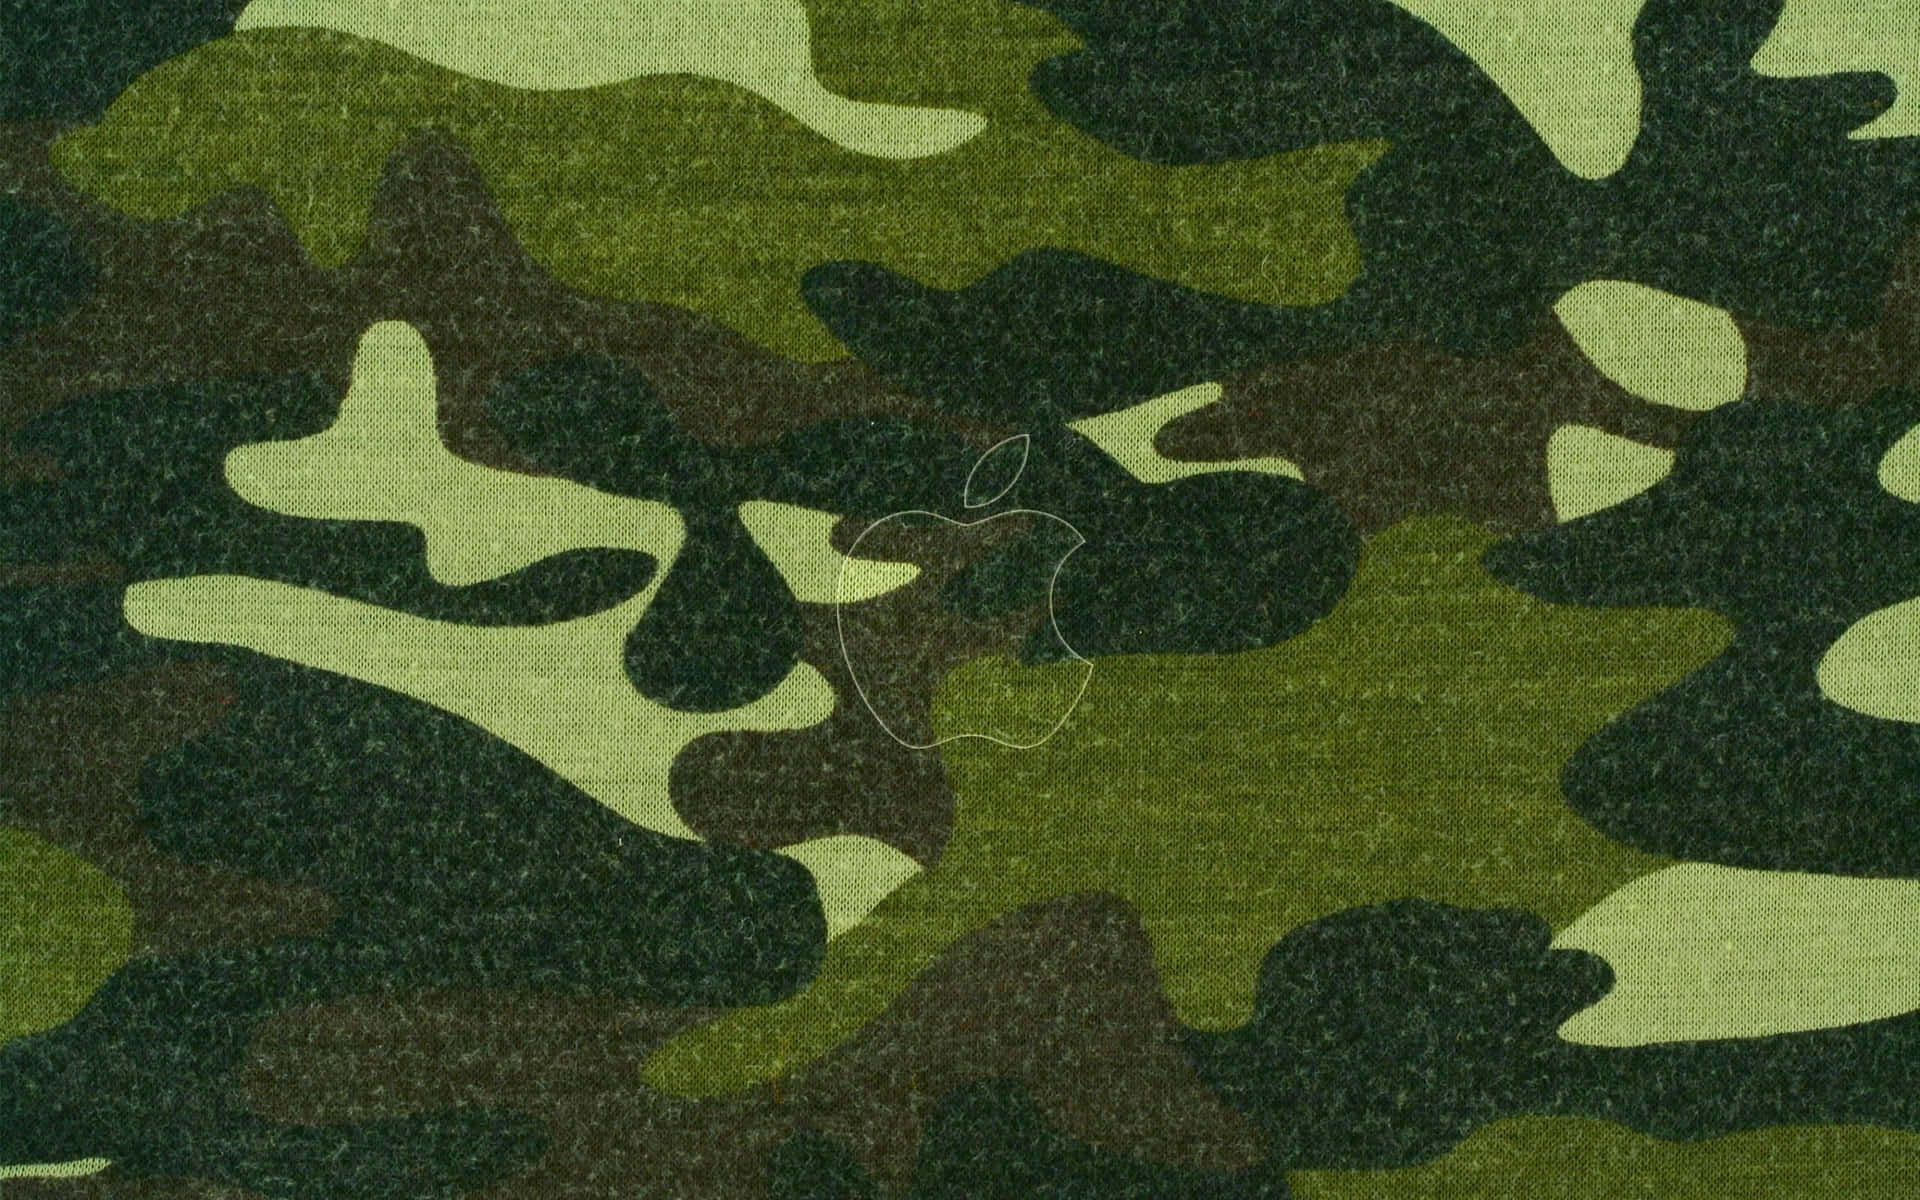 Enstilren Kamouflagemönster I Levande Grönt. Wallpaper